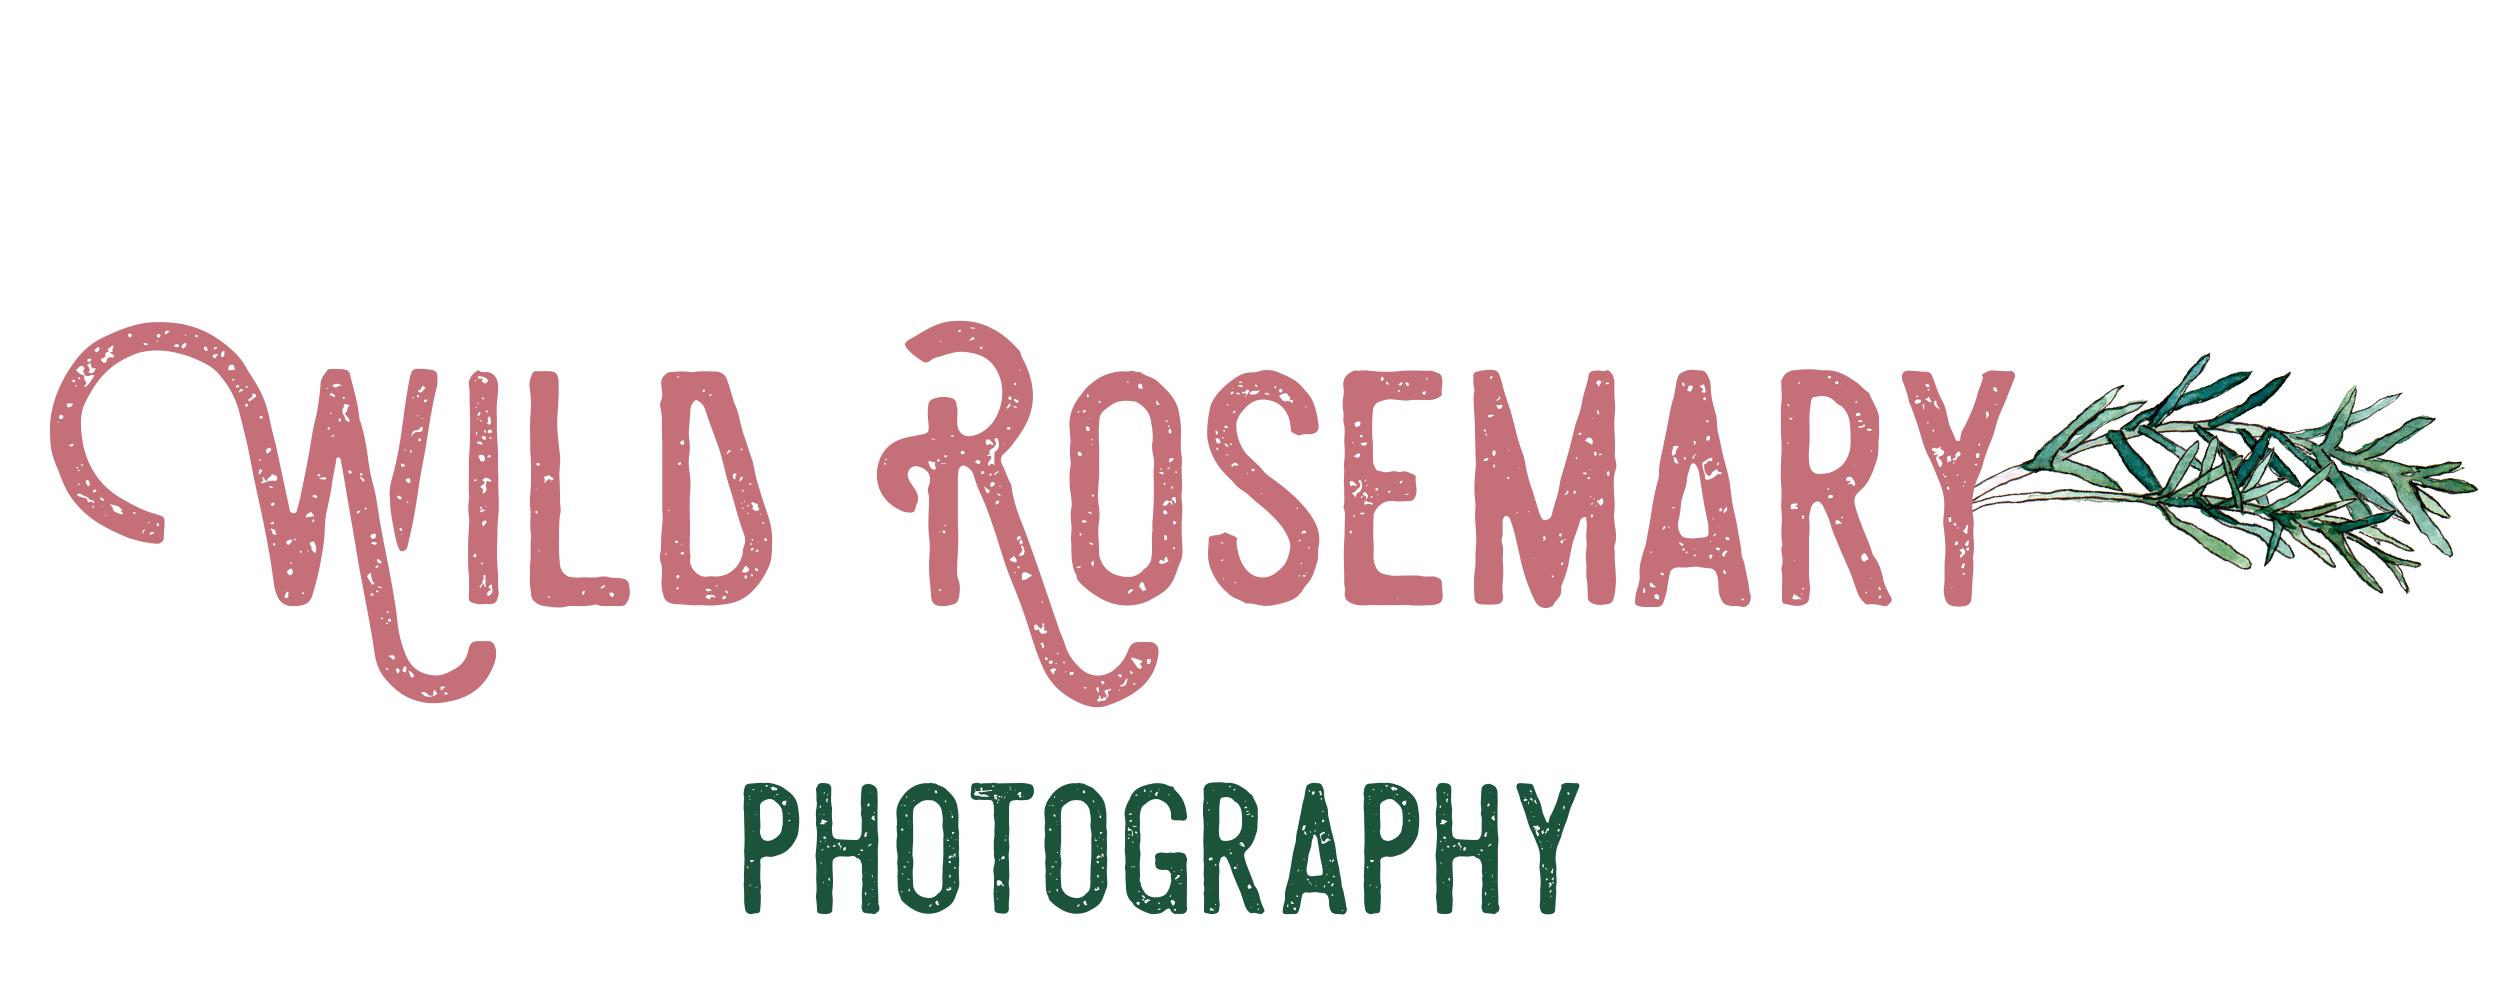 Wild Rosemary Photography